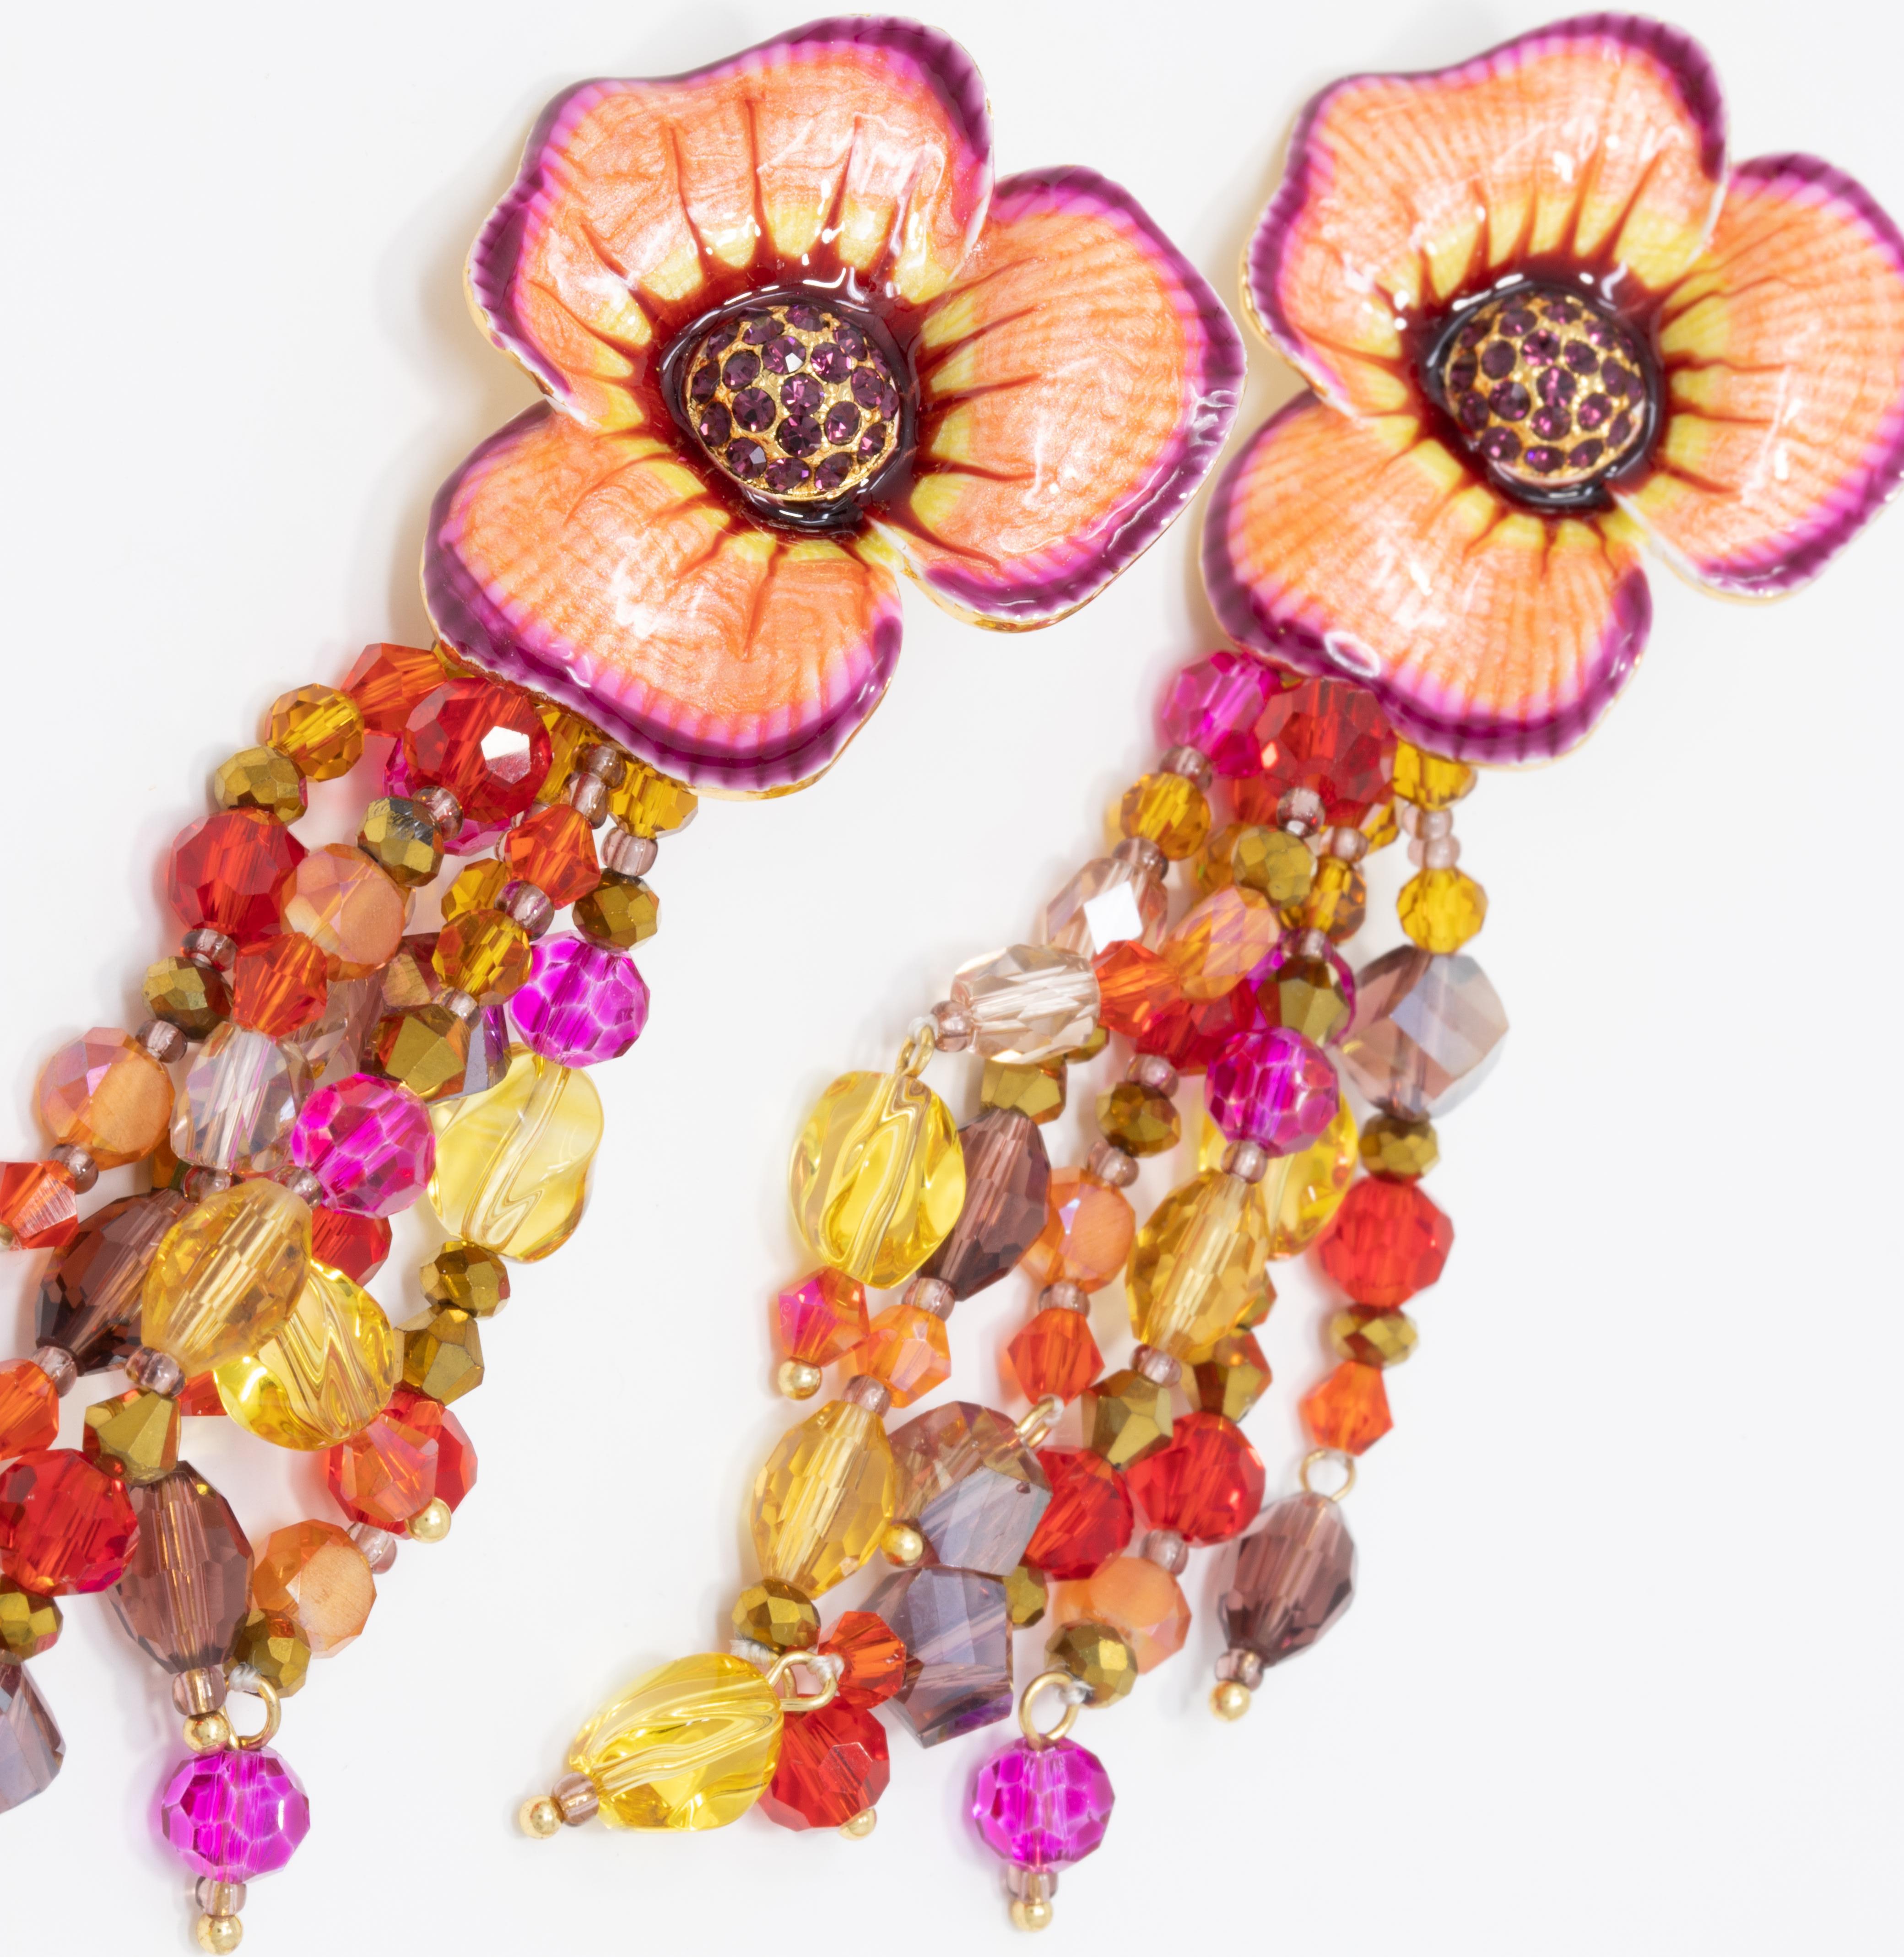 Le pouvoir des fleurs ! Une paire de boucles d'oreilles ornées d'un motif floral, avec des brins de cristaux de rubis, d'améthyste et d'ambre. Peint en pêche et en violet. Serti sur un métal plaqué or.

Cachets : Jay, Jay Strongwater, CN

Par Jay